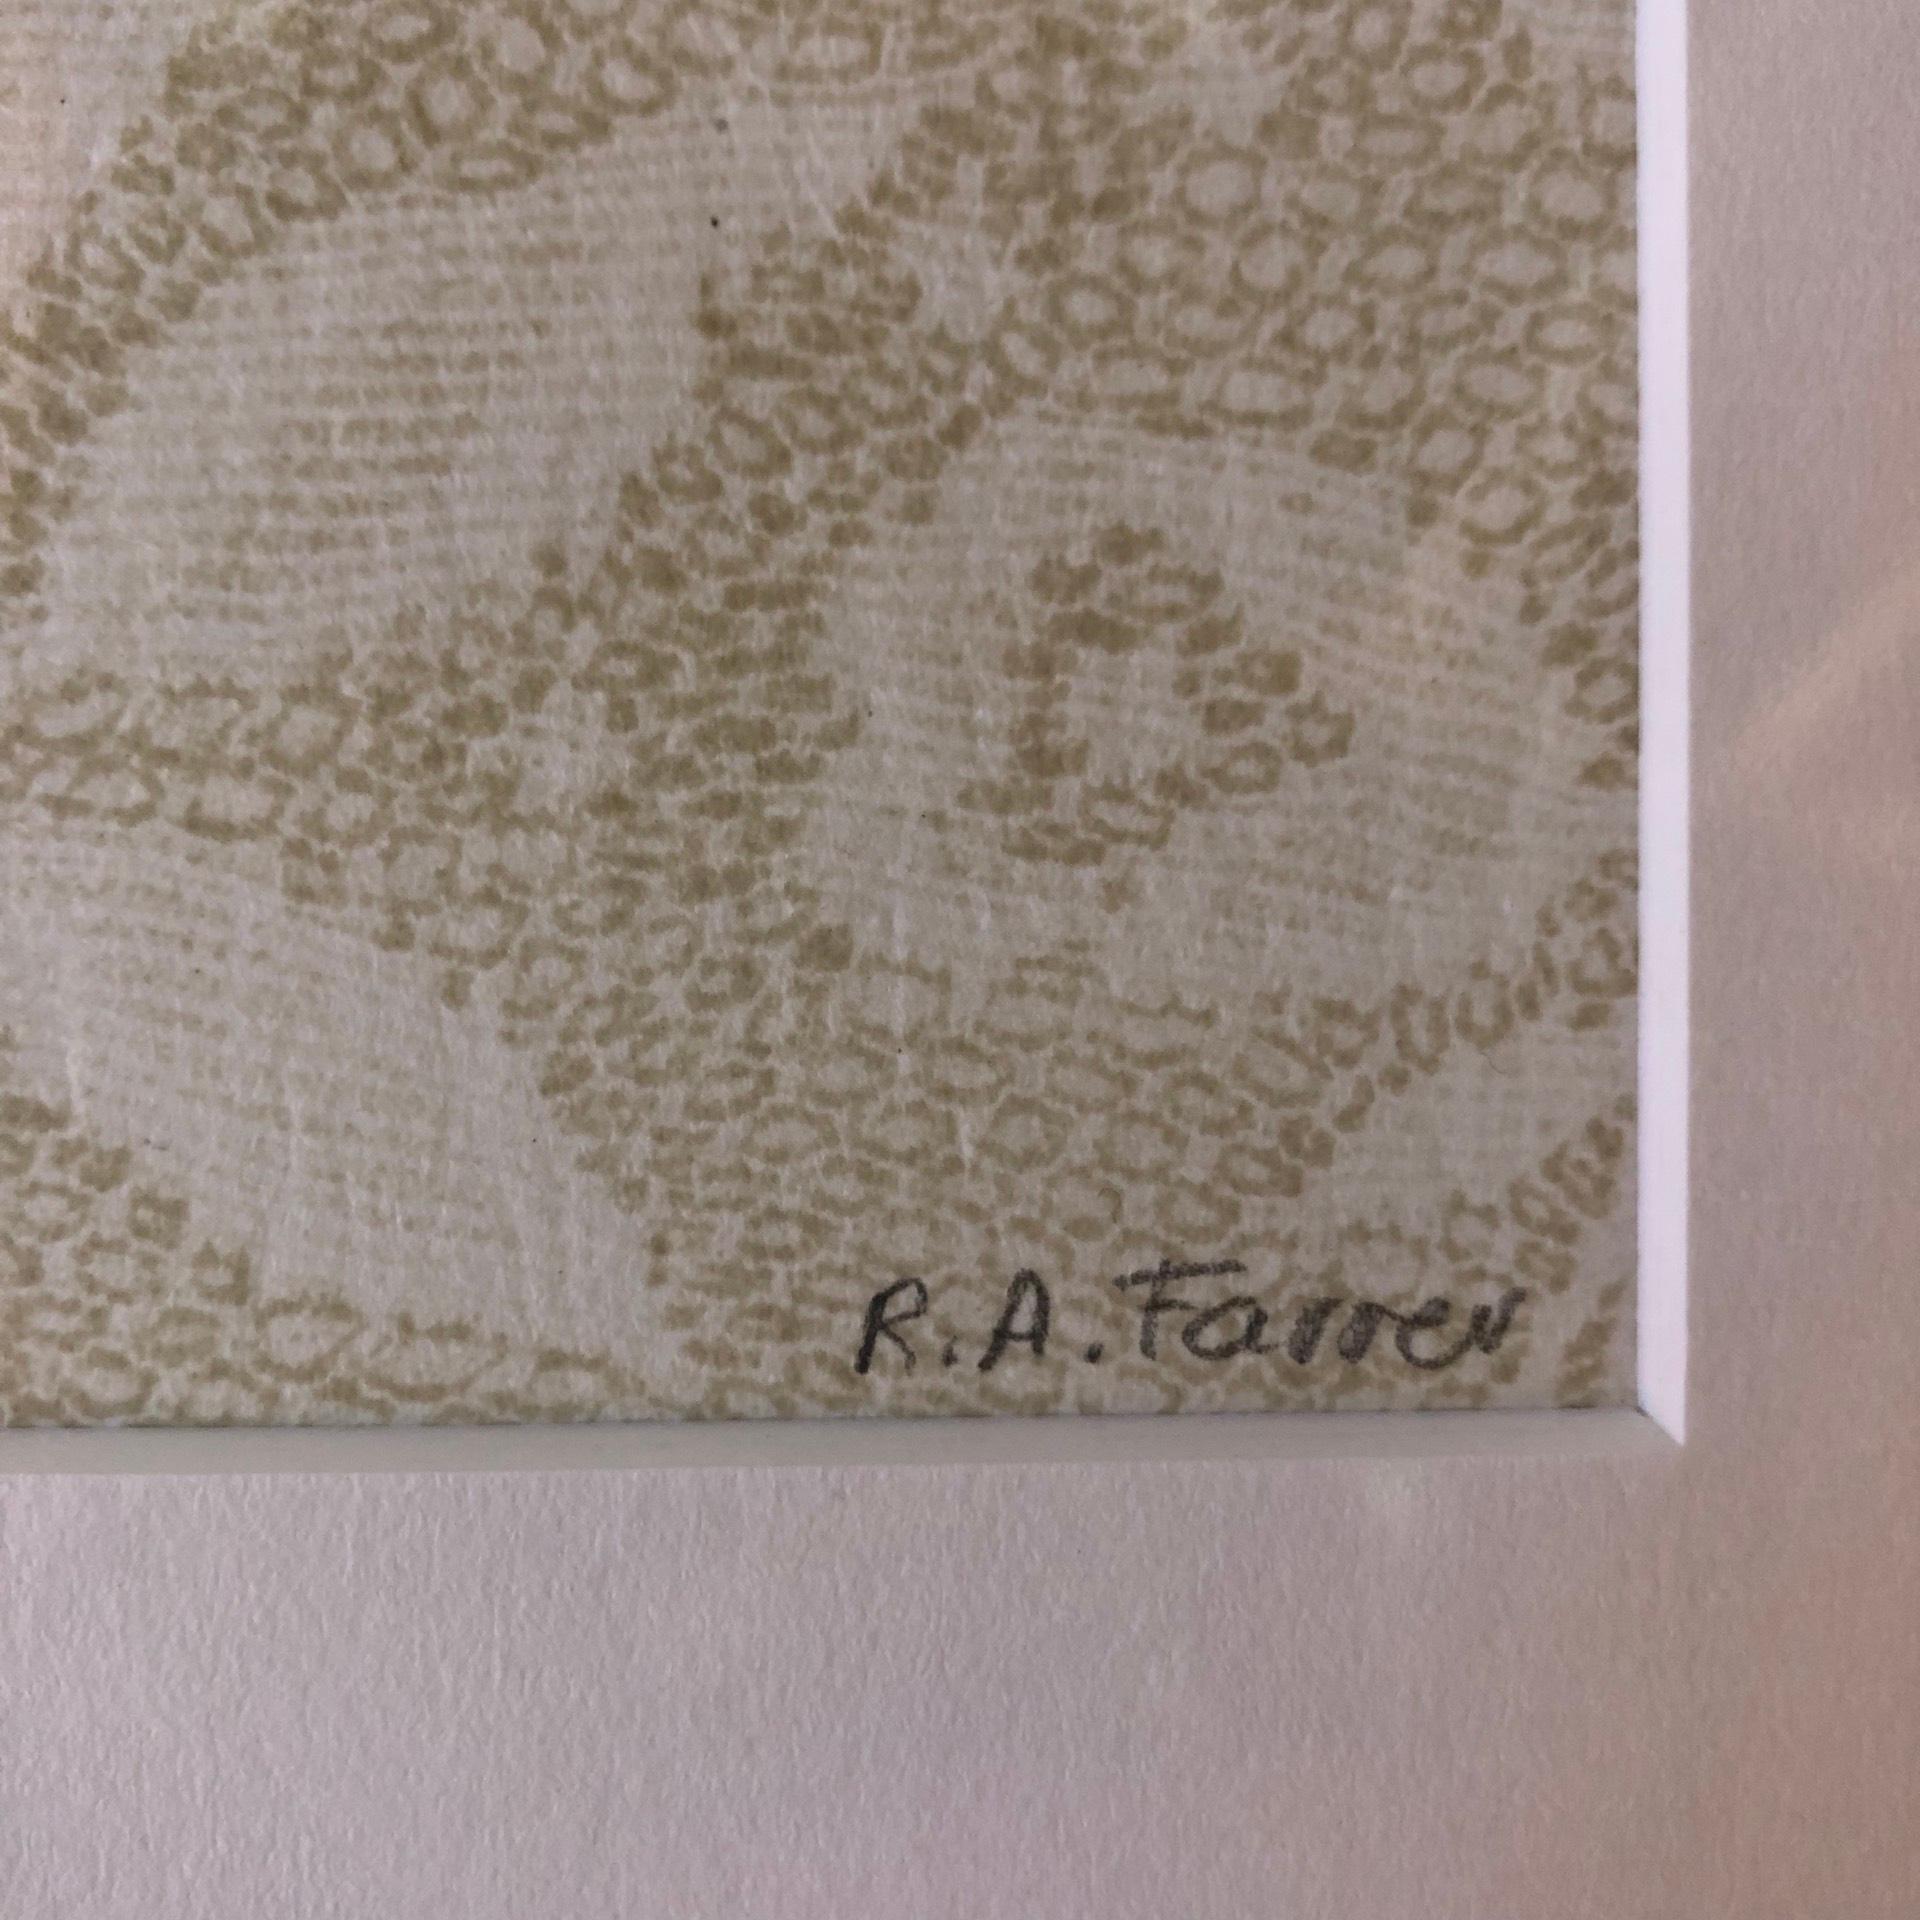 Rosemary Farrer, Still Life with Net Curtain, Still Life Print, Original Art 2